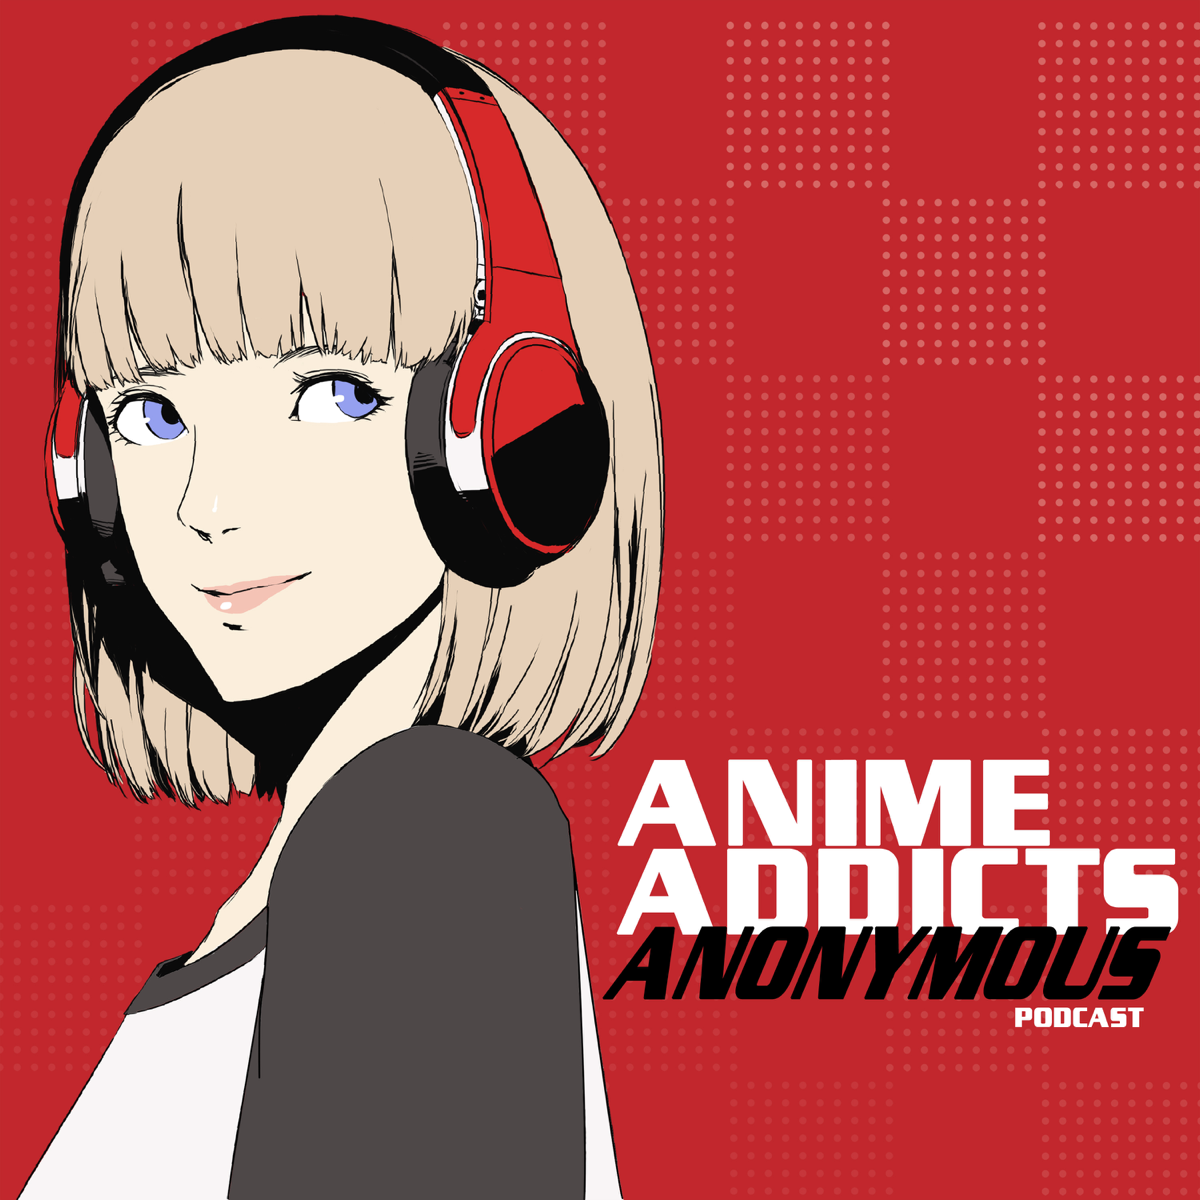 Anime Addicts Anonymous Podcast Episode 529 - Hanako-Kun!!! - YouTube